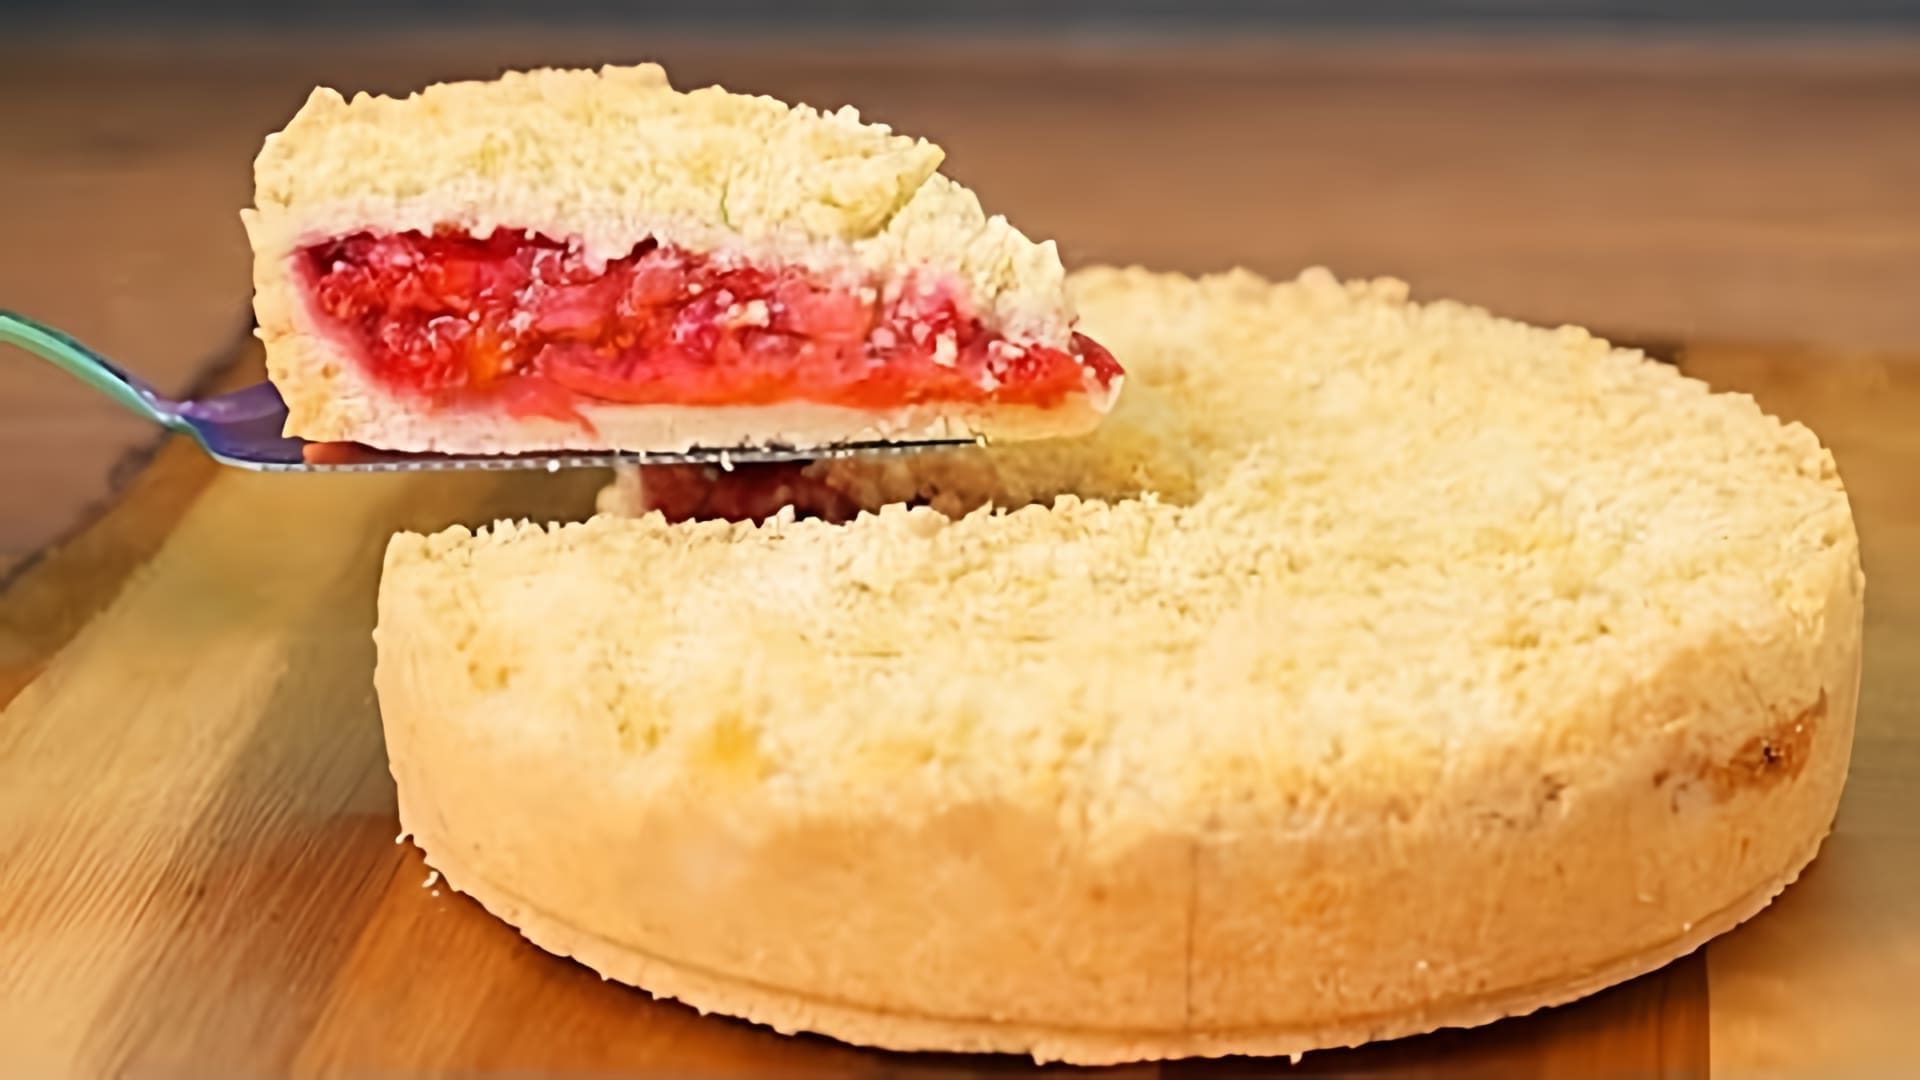 В этом видео демонстрируется рецепт быстрого и простого пирога с ягодами